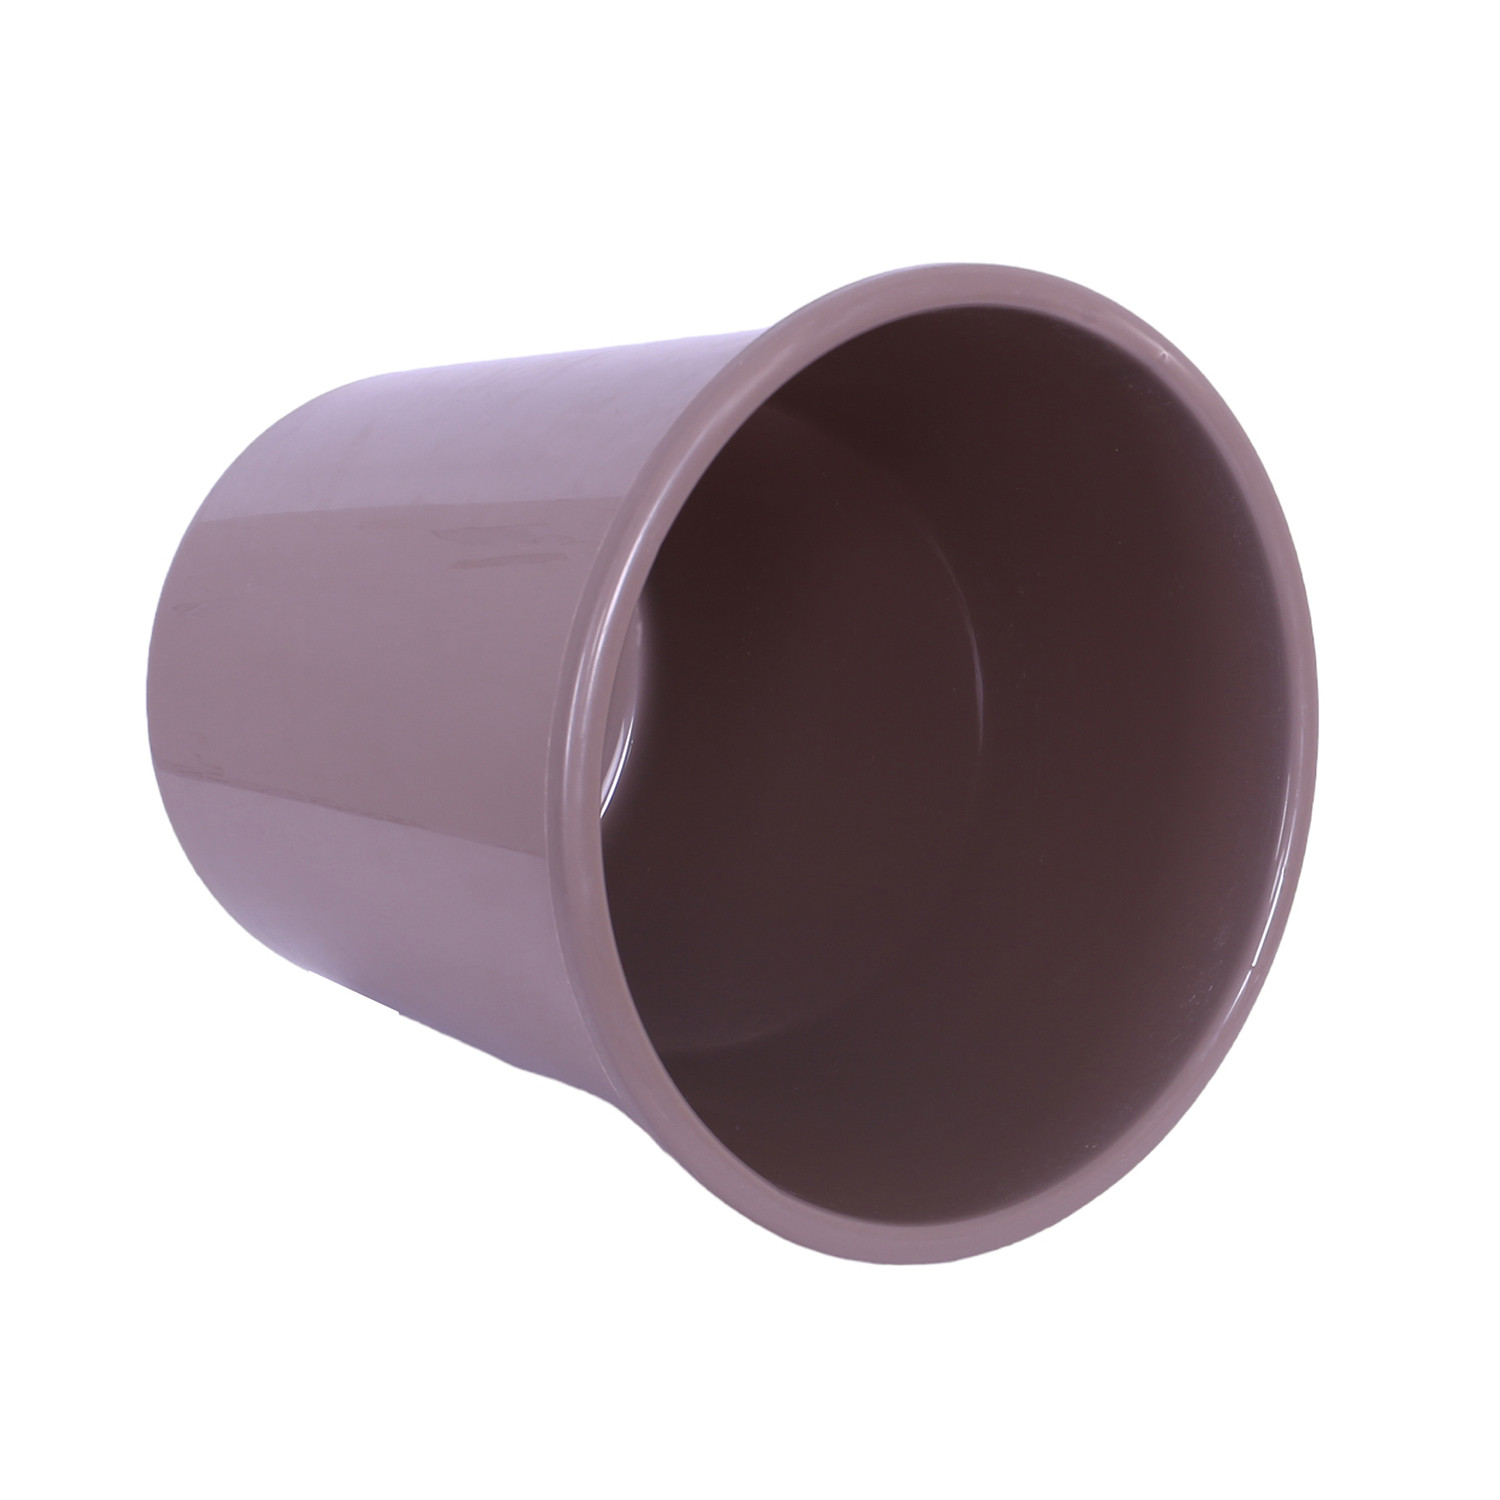 Kuber Industries Dustbin | Open Dustbin | Plastic Garbage Dustbin | Dustbin For Kitchen | Dustbin For Bathroom | Office Dustbin | Plain Sada Dustbin | 7 LTR | 066 | Pack of 2 | Multi